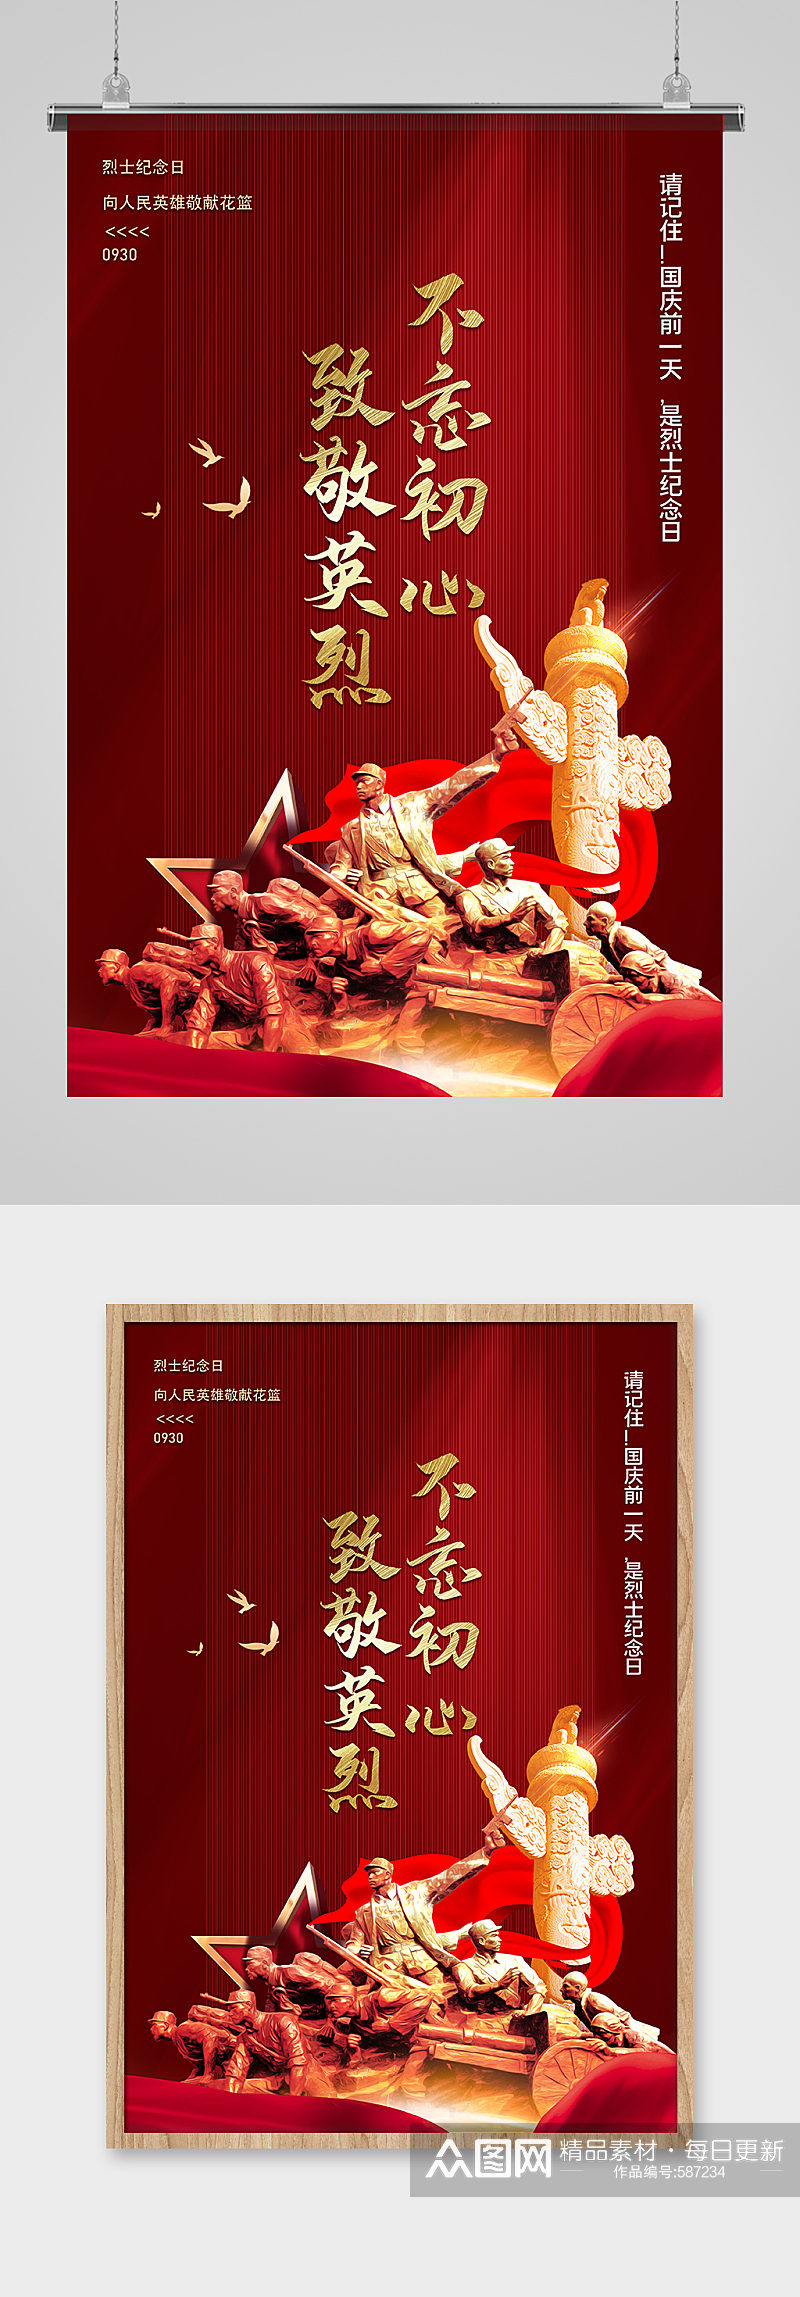 9月30日中国烈士纪念日海报素材